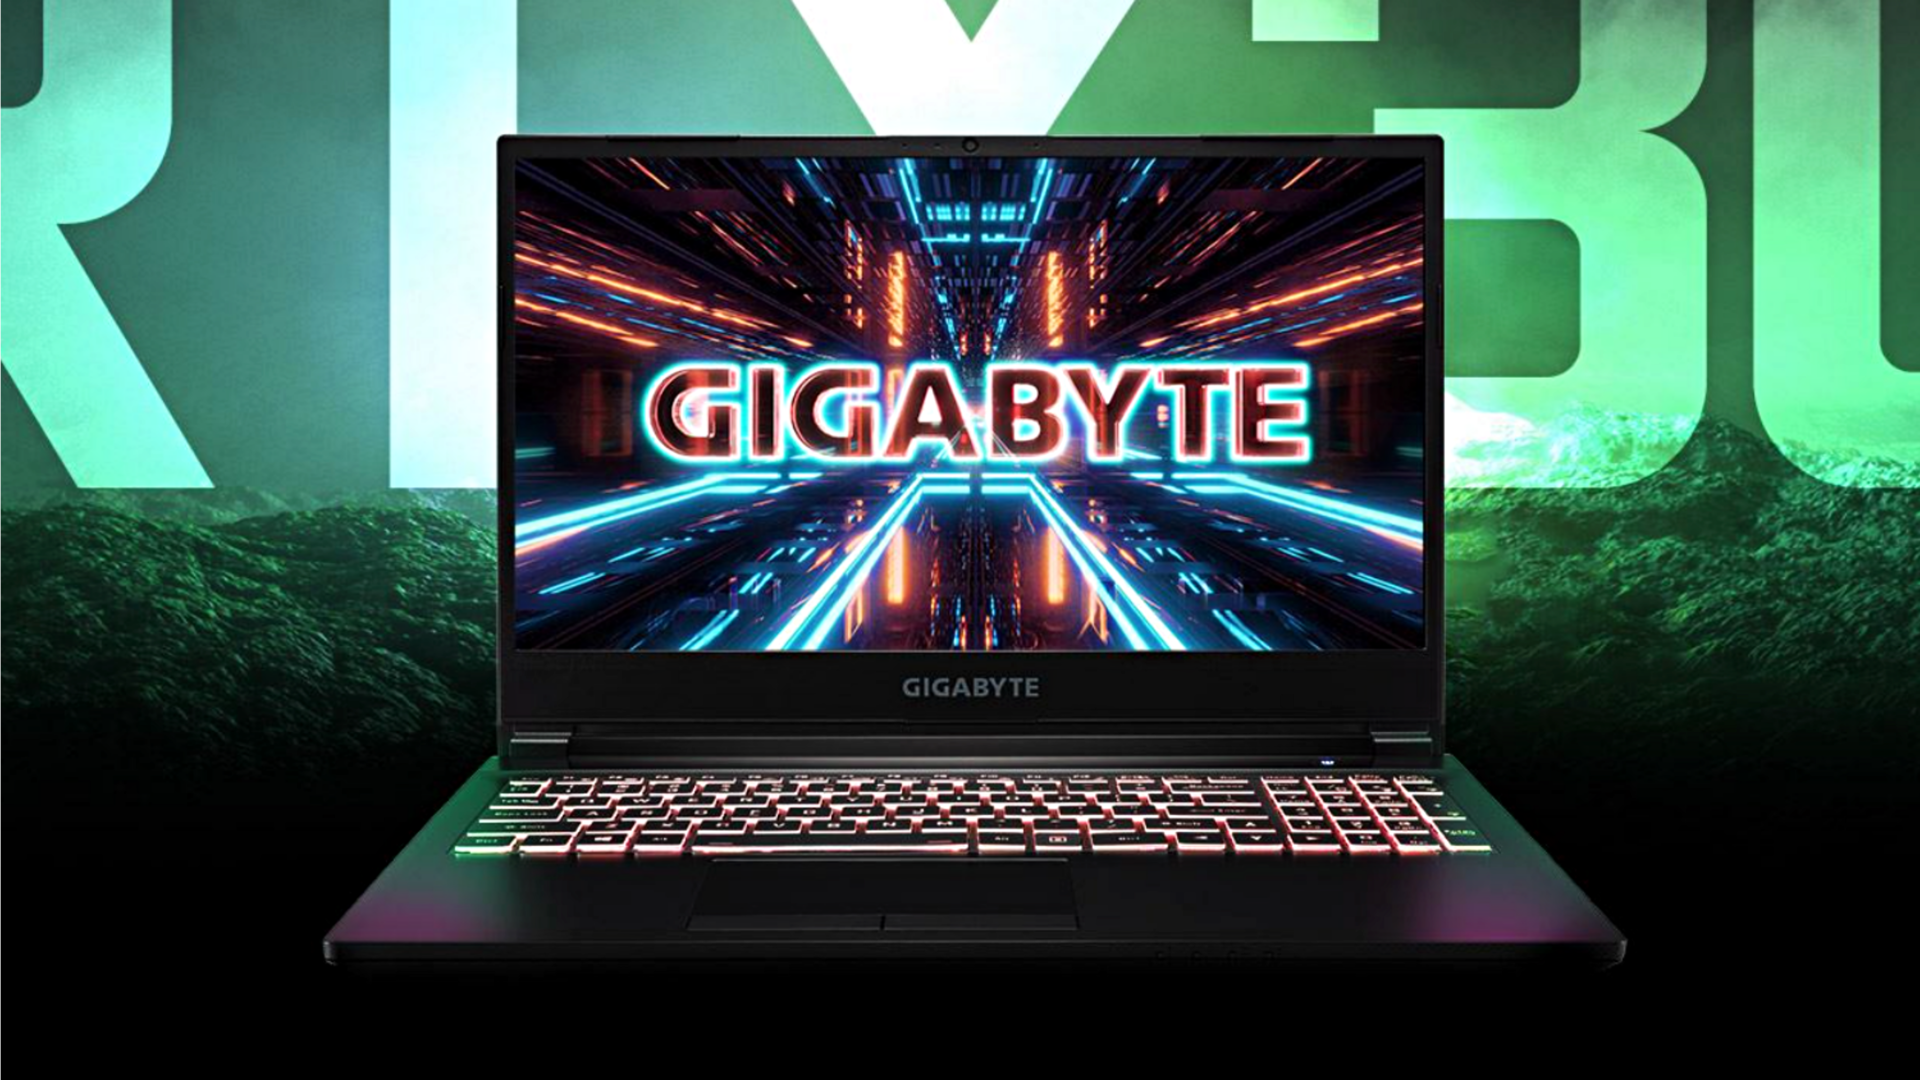 GIGABYTE G5 MD gaming laptop is now cheaper on Flipkart